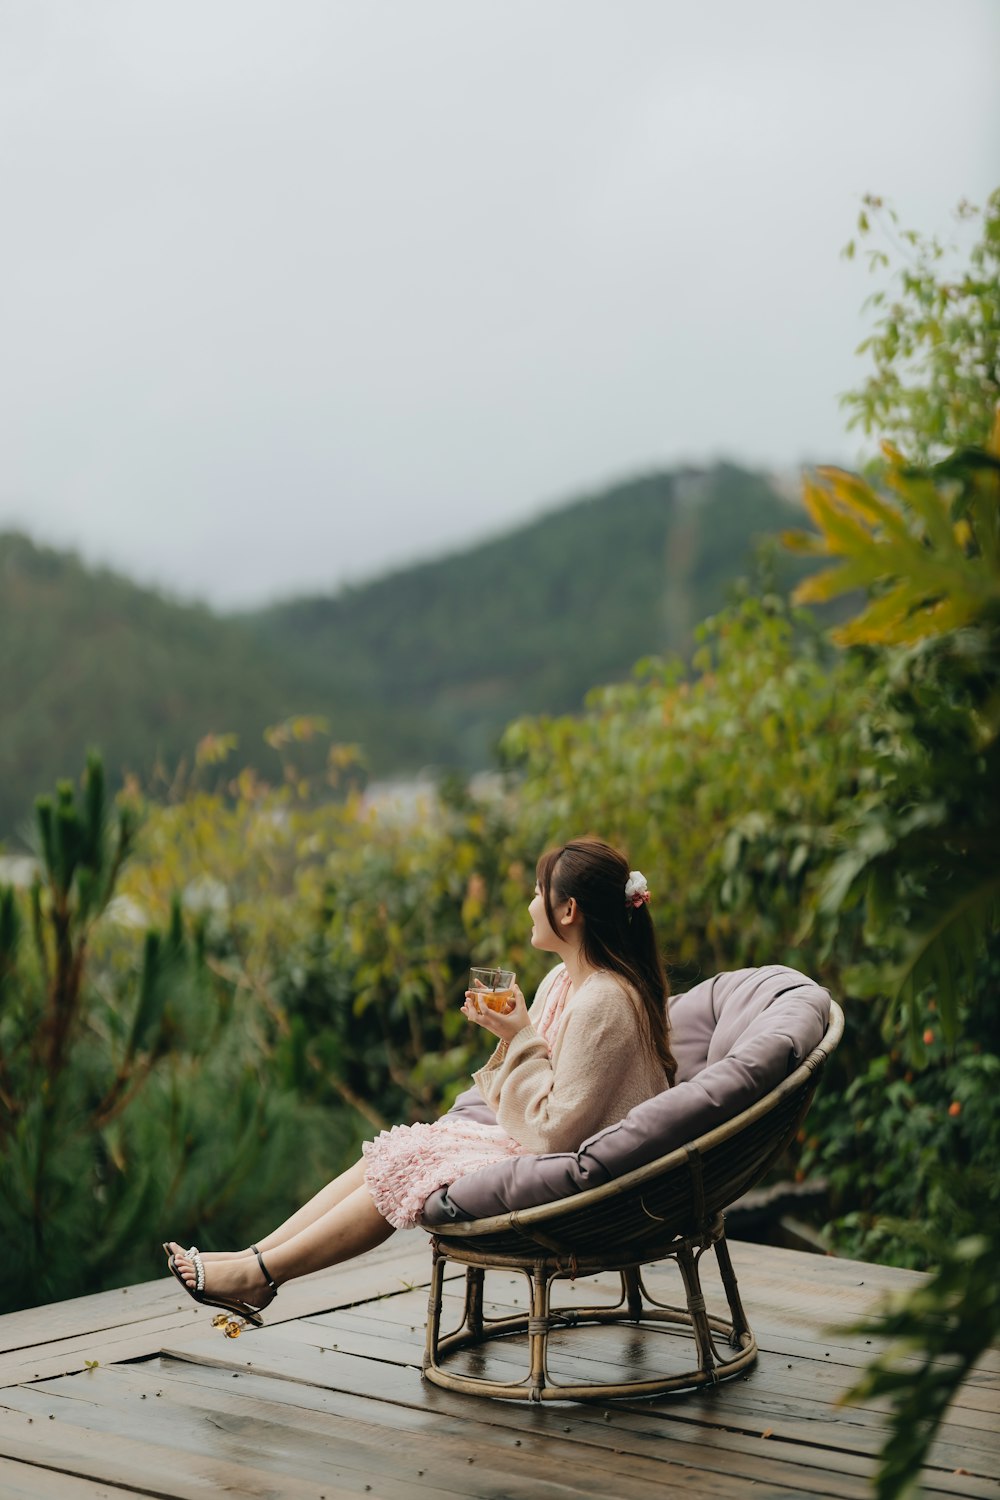 Una mujer sentada en una silla encima de una terraza de madera